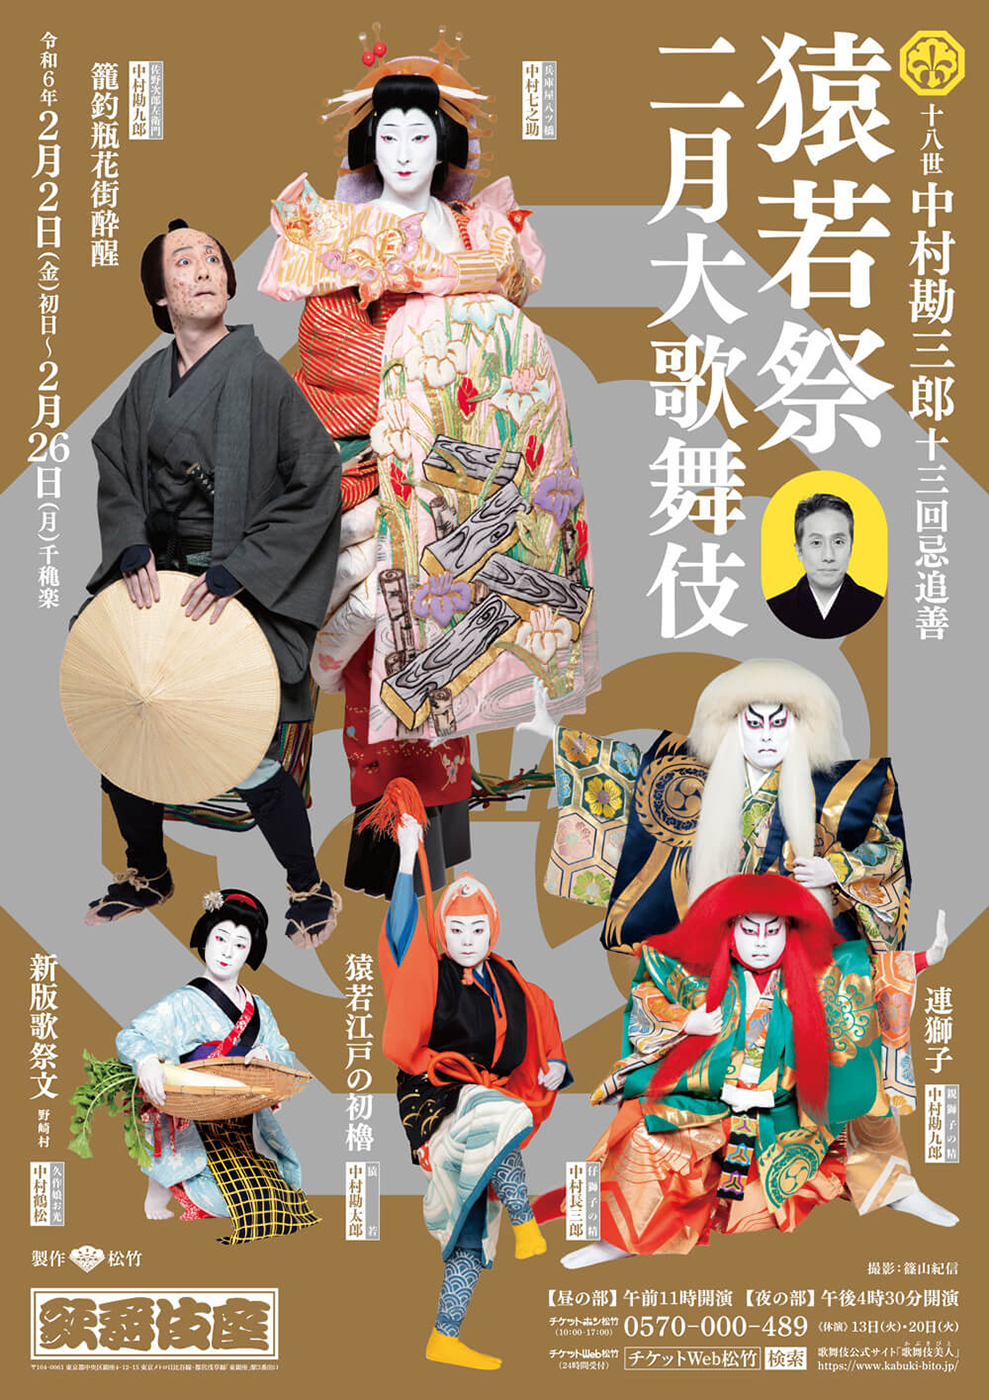 猿若祭二月大歌舞伎 夜の部『猿若江戸の初櫓』『すし屋』『連獅子』歌舞伎座